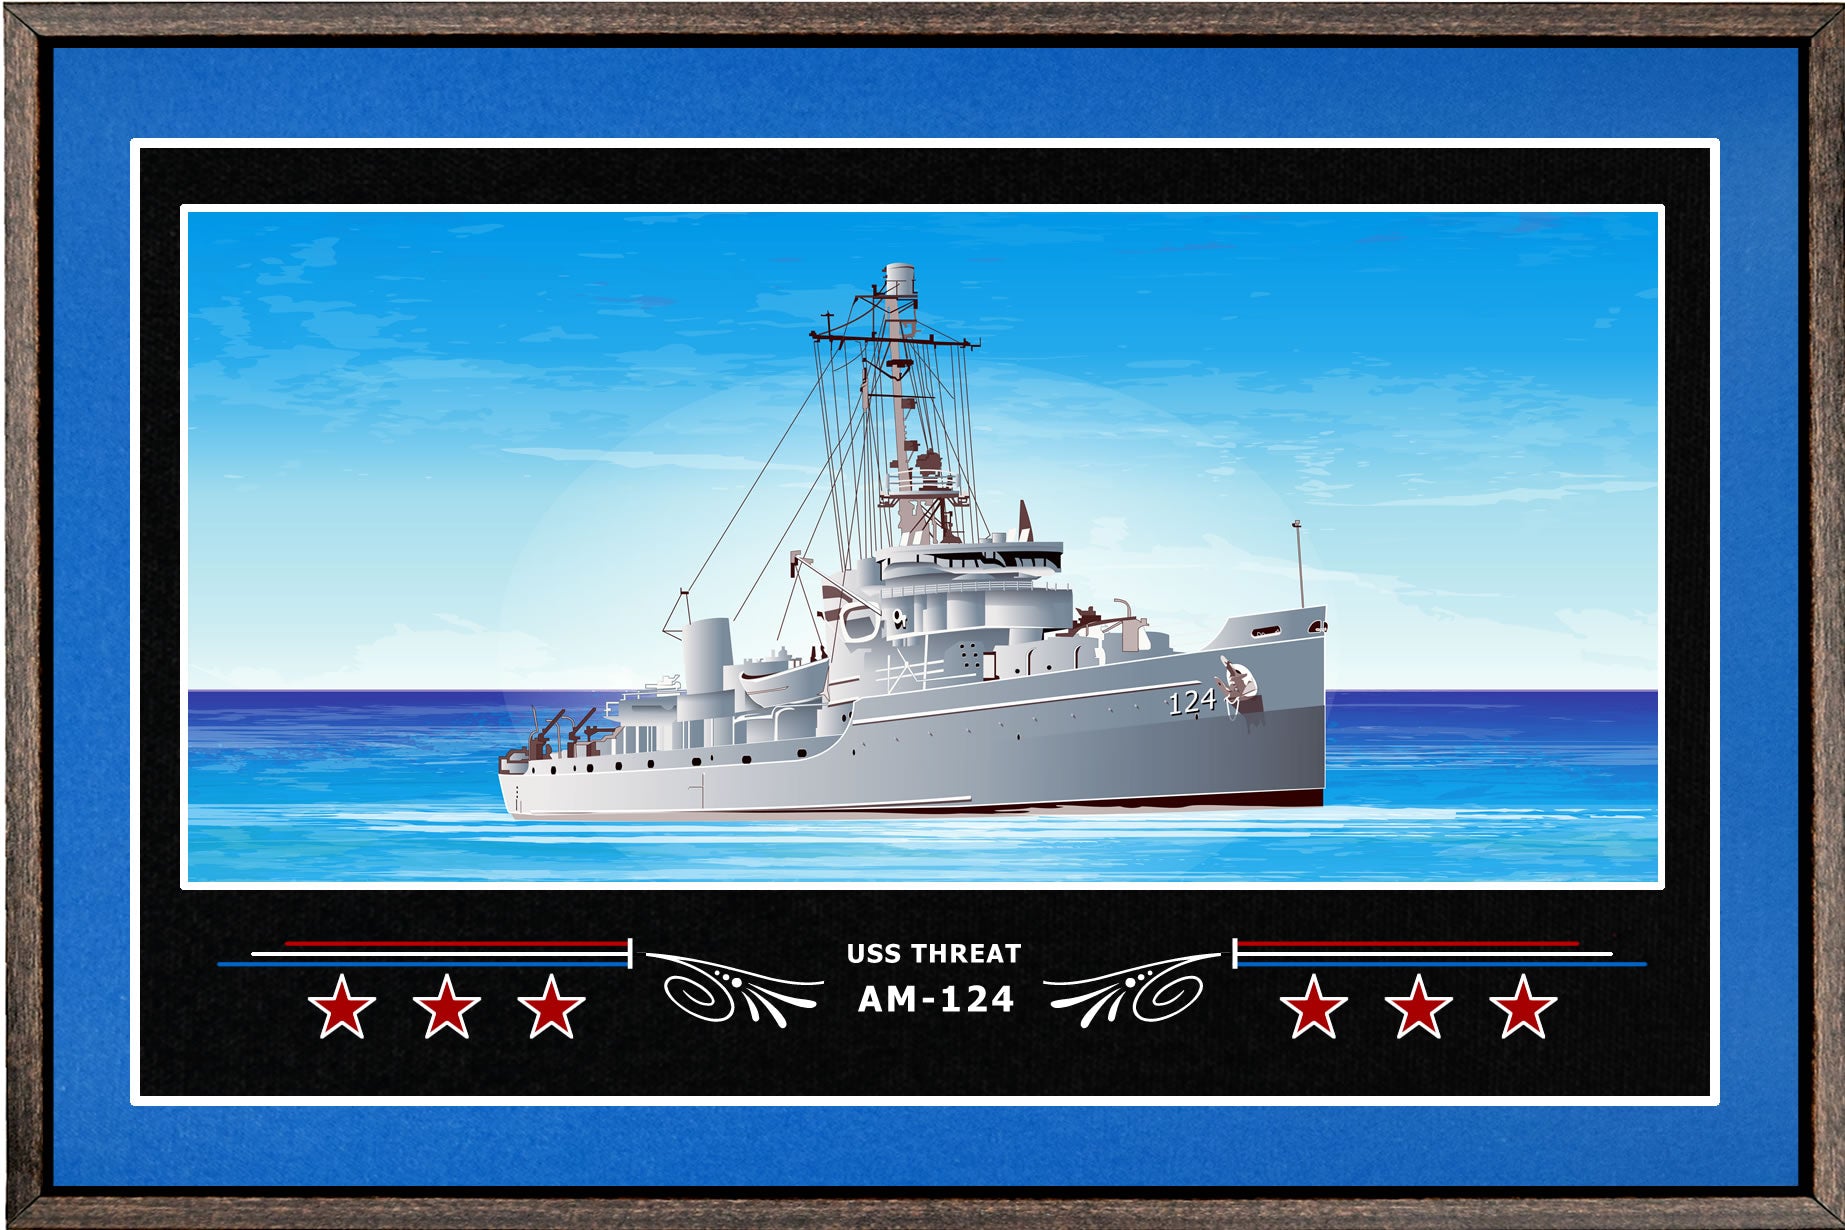 USS THREAT AM 124 BOX FRAMED CANVAS ART BLUE